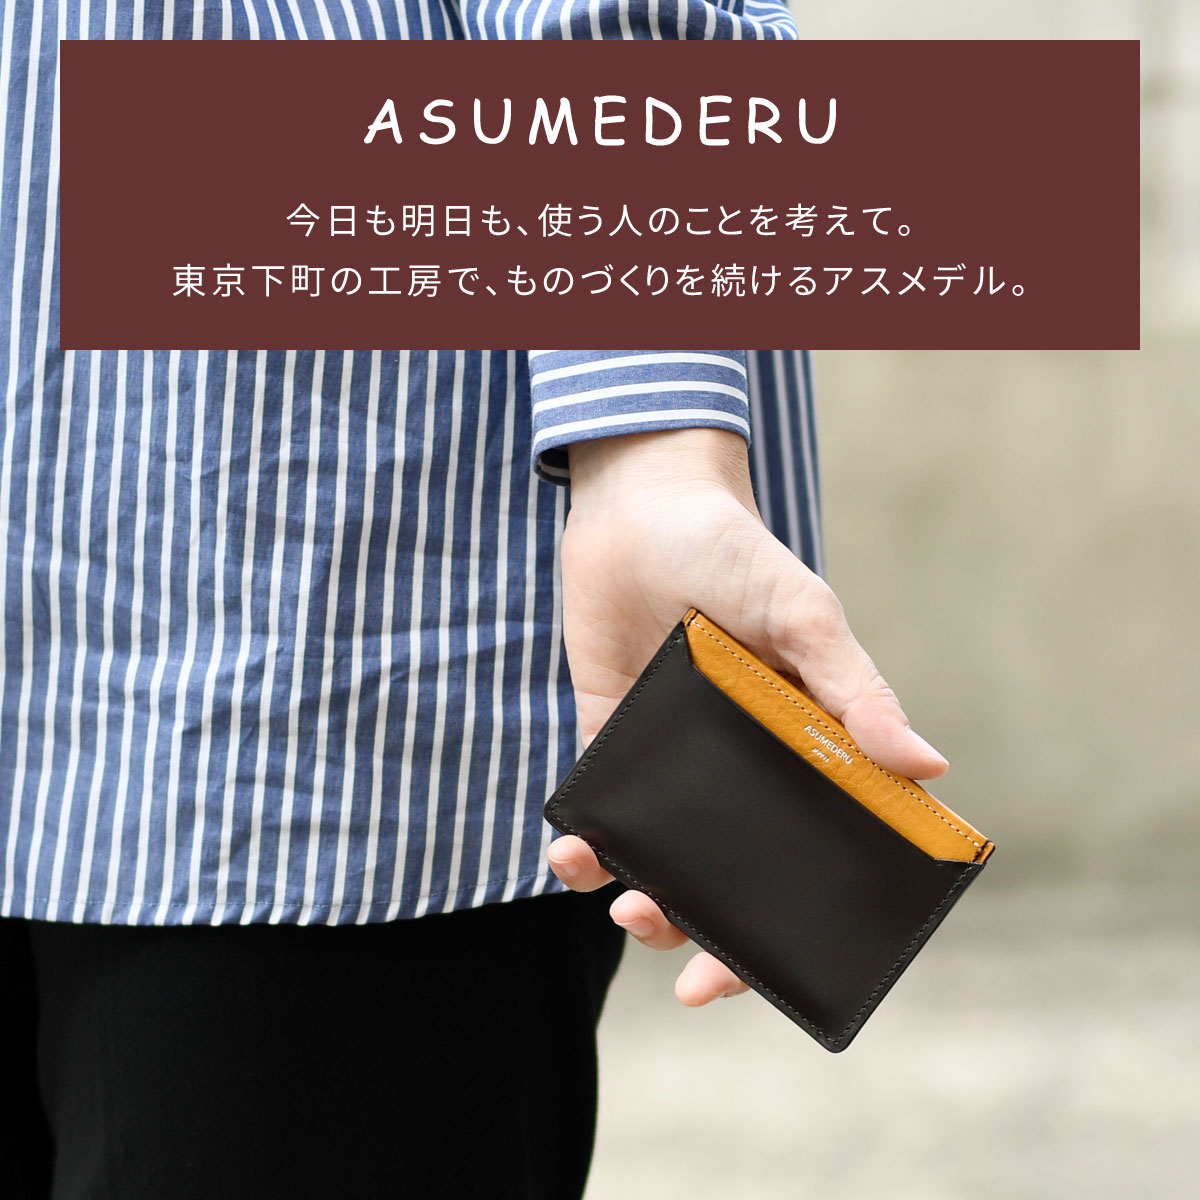 パスケース 定期入れ 単パス 極薄 ASUMEDERU 日本製 姫路レザー キップ